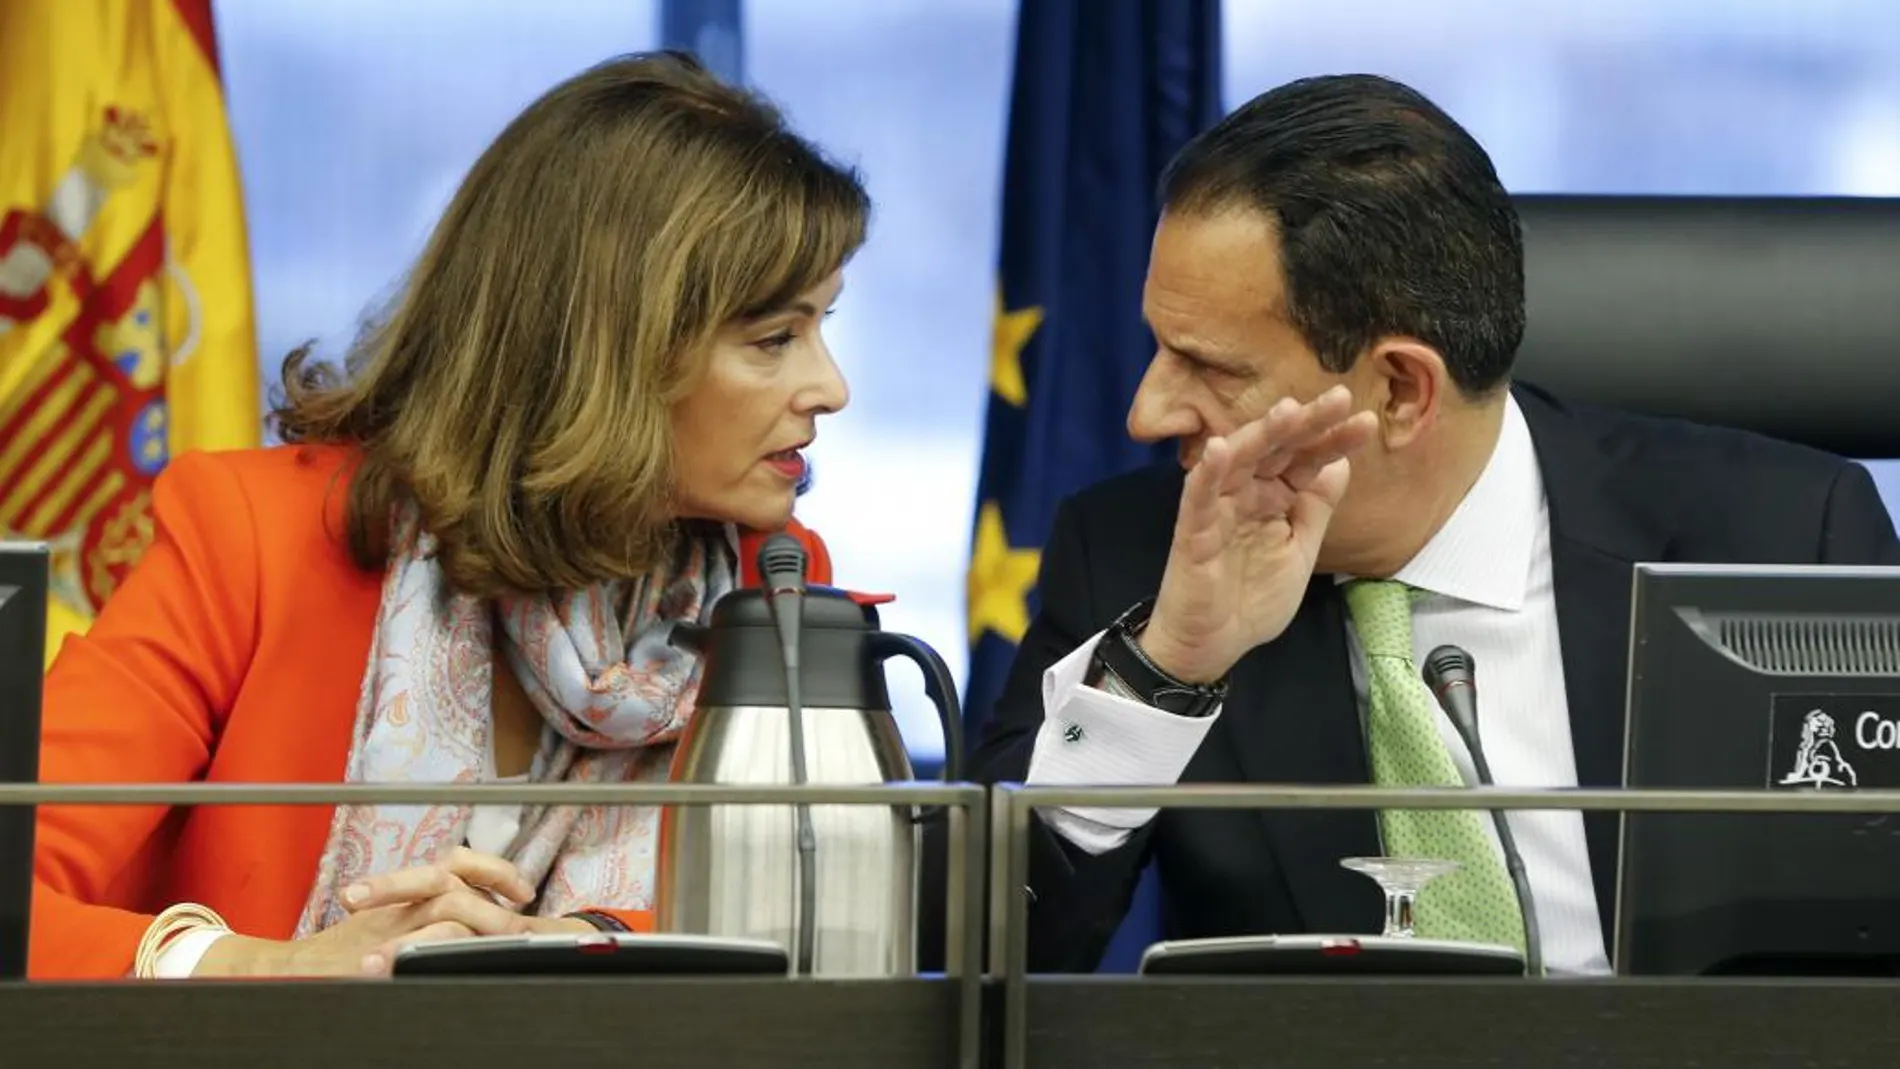 Los diputados Ana María Botella Gómez (PSOE) y Rafael Merino López (PP) conversan en la Comisión de Interior en el Congreso